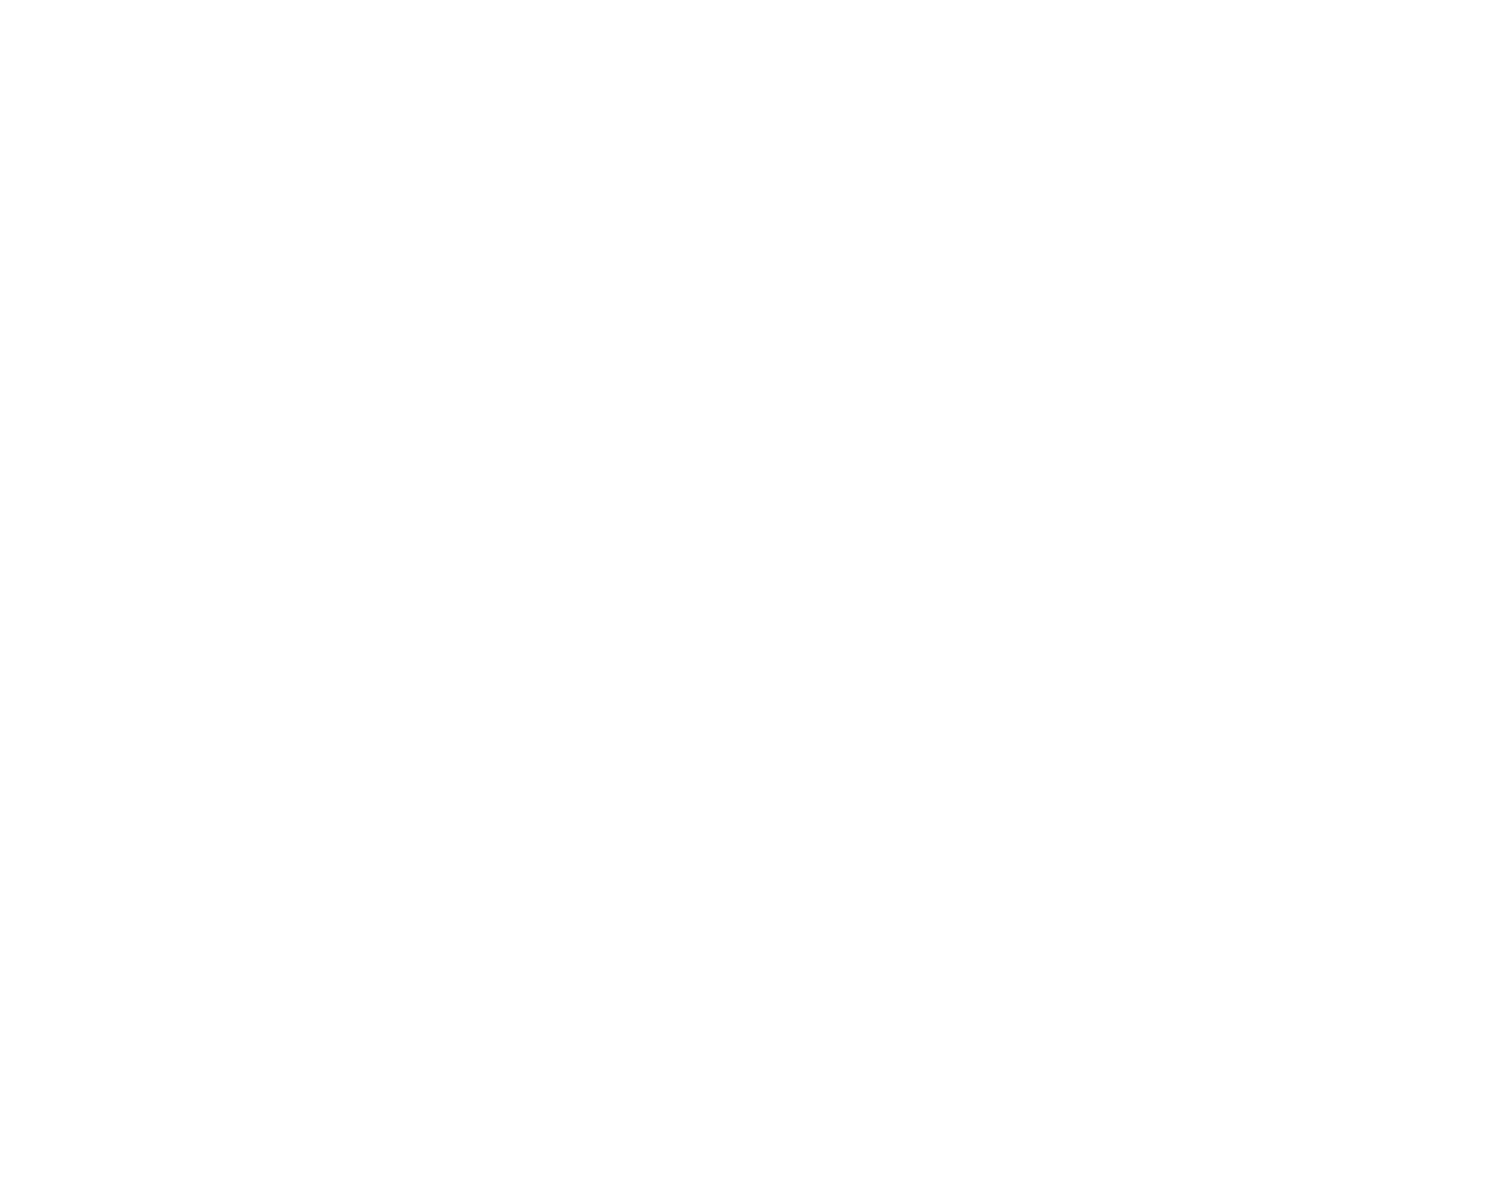 Gŵyr Community Land Trust